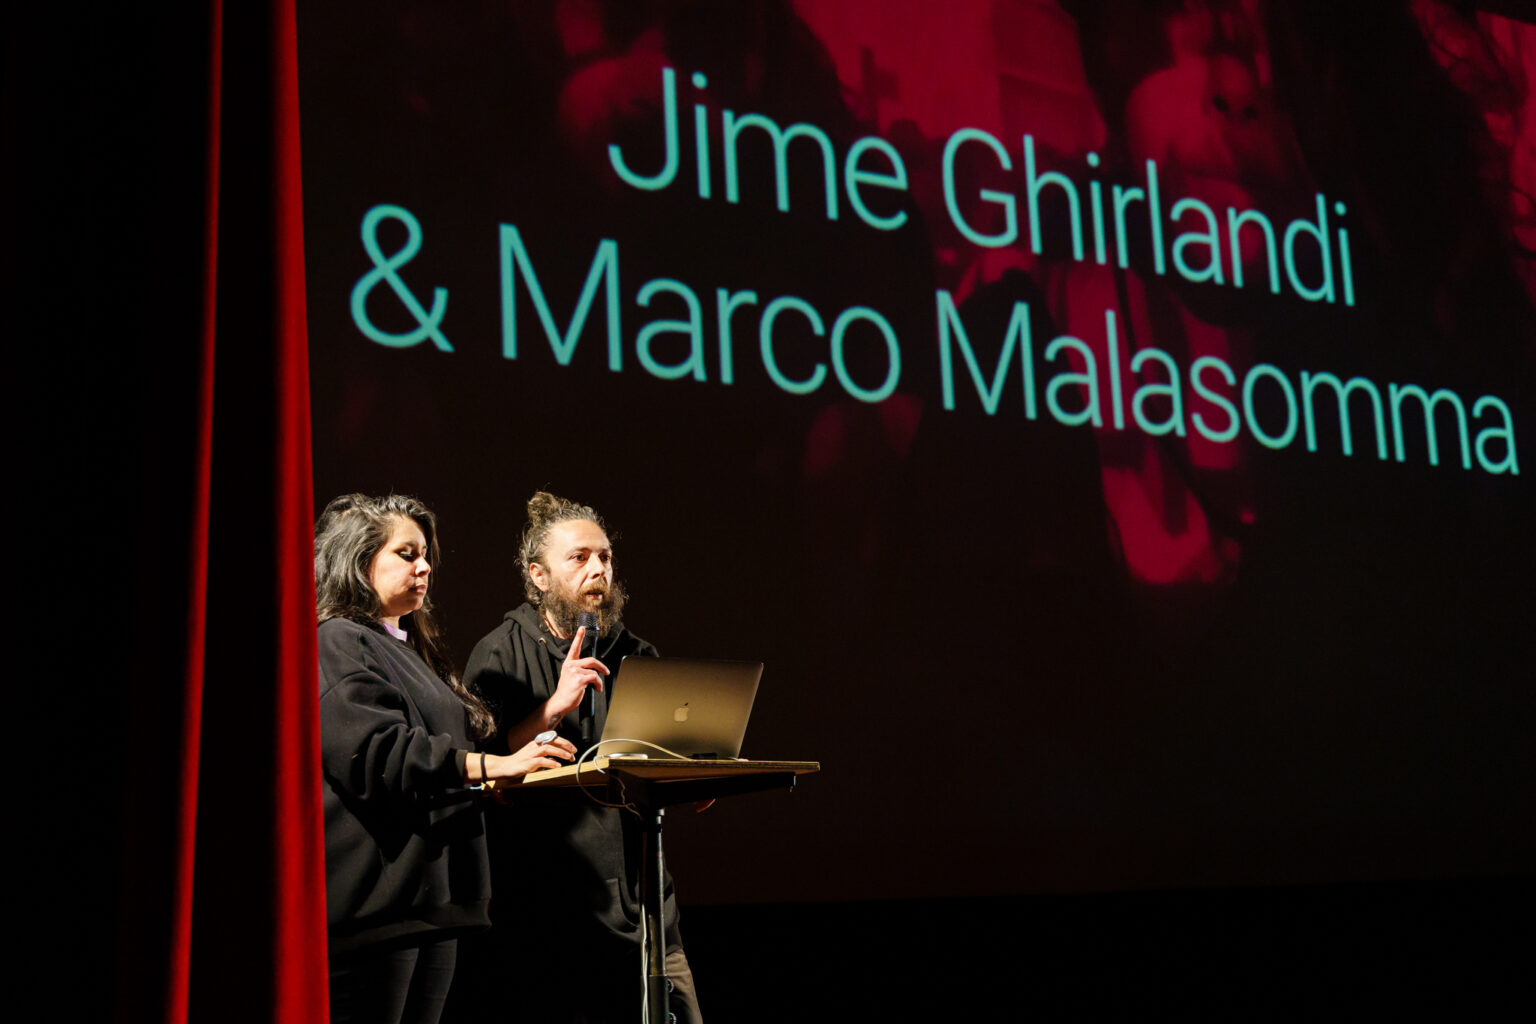 Vedere l'invisibile masterclass - Jime Ghirlandi & Marco Malasomma